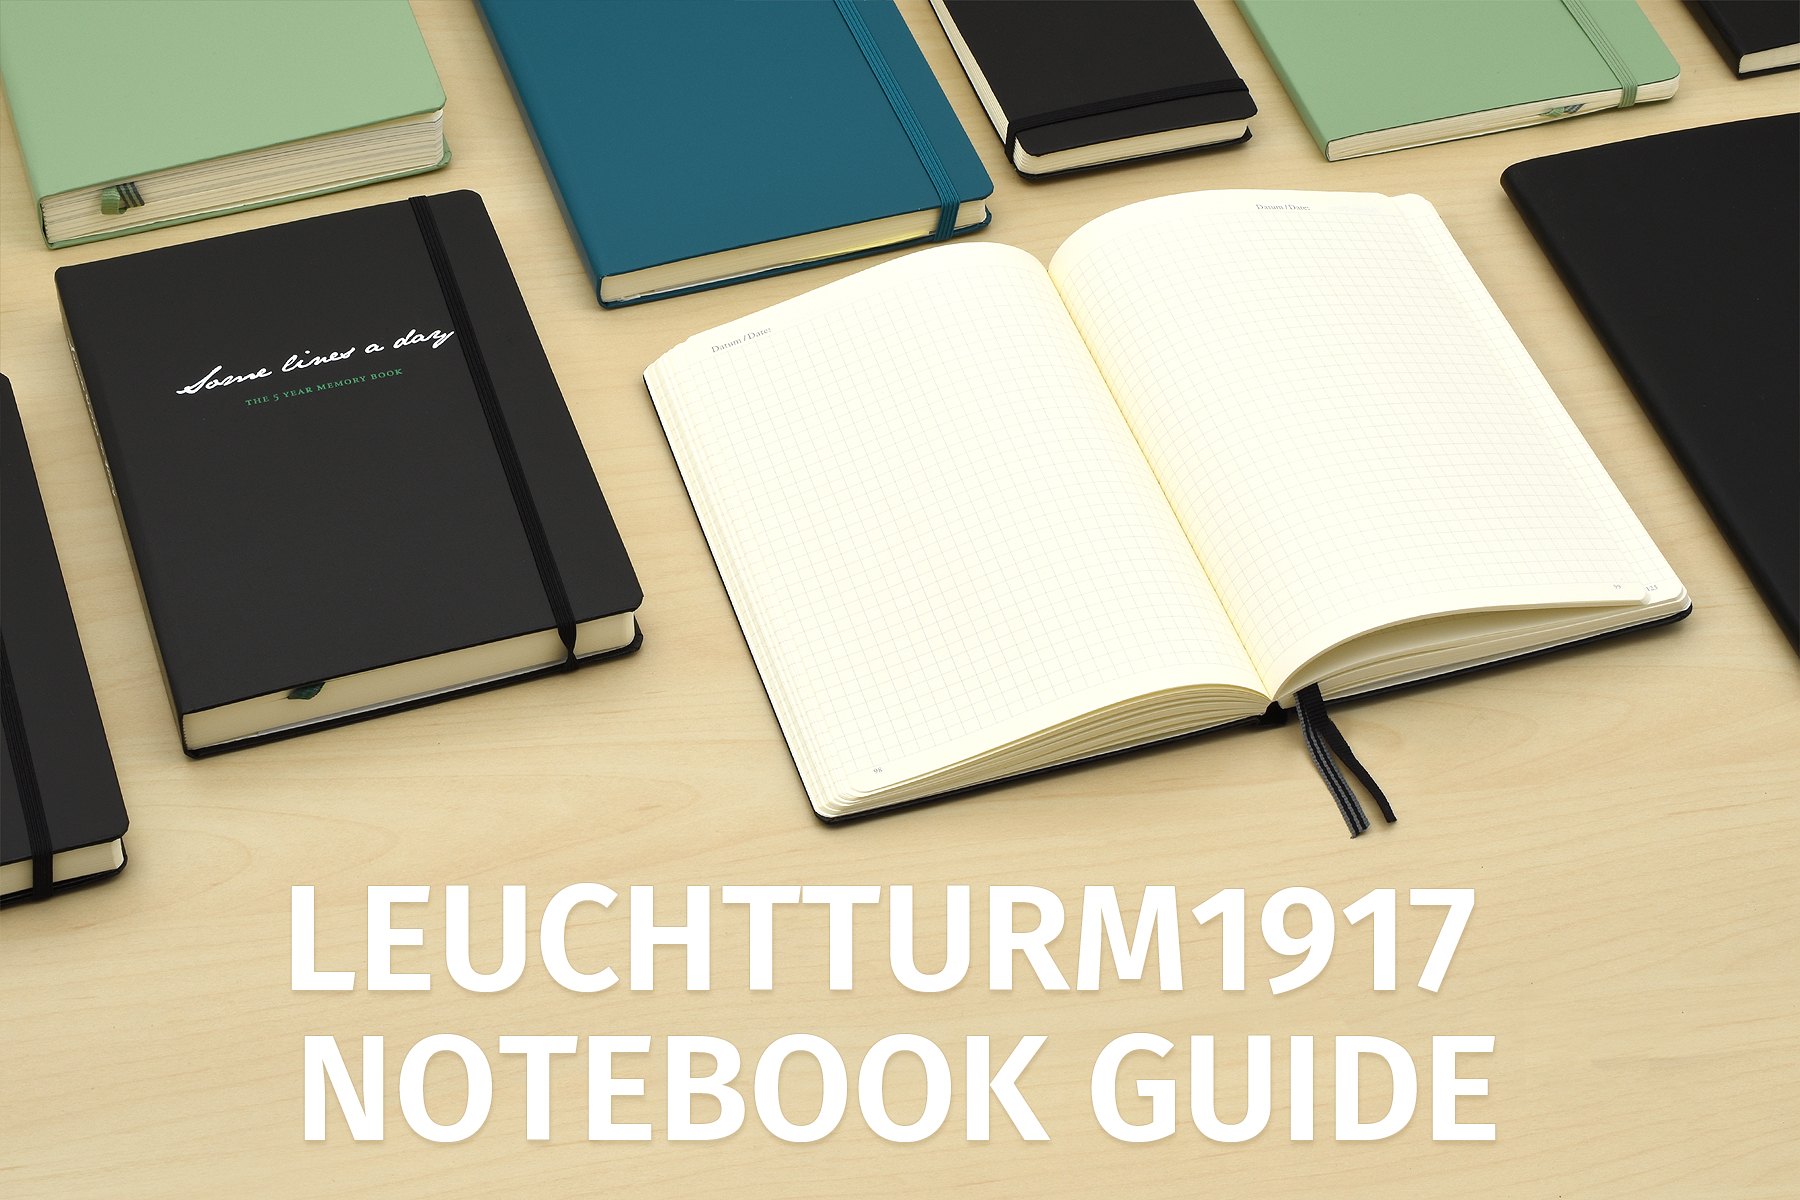 Leuchtturm1917 : A5 Softcover Notebook : 80gsm : 123 Pages : Dotted : Navy  - LEUCHTTURM1917 - Brands